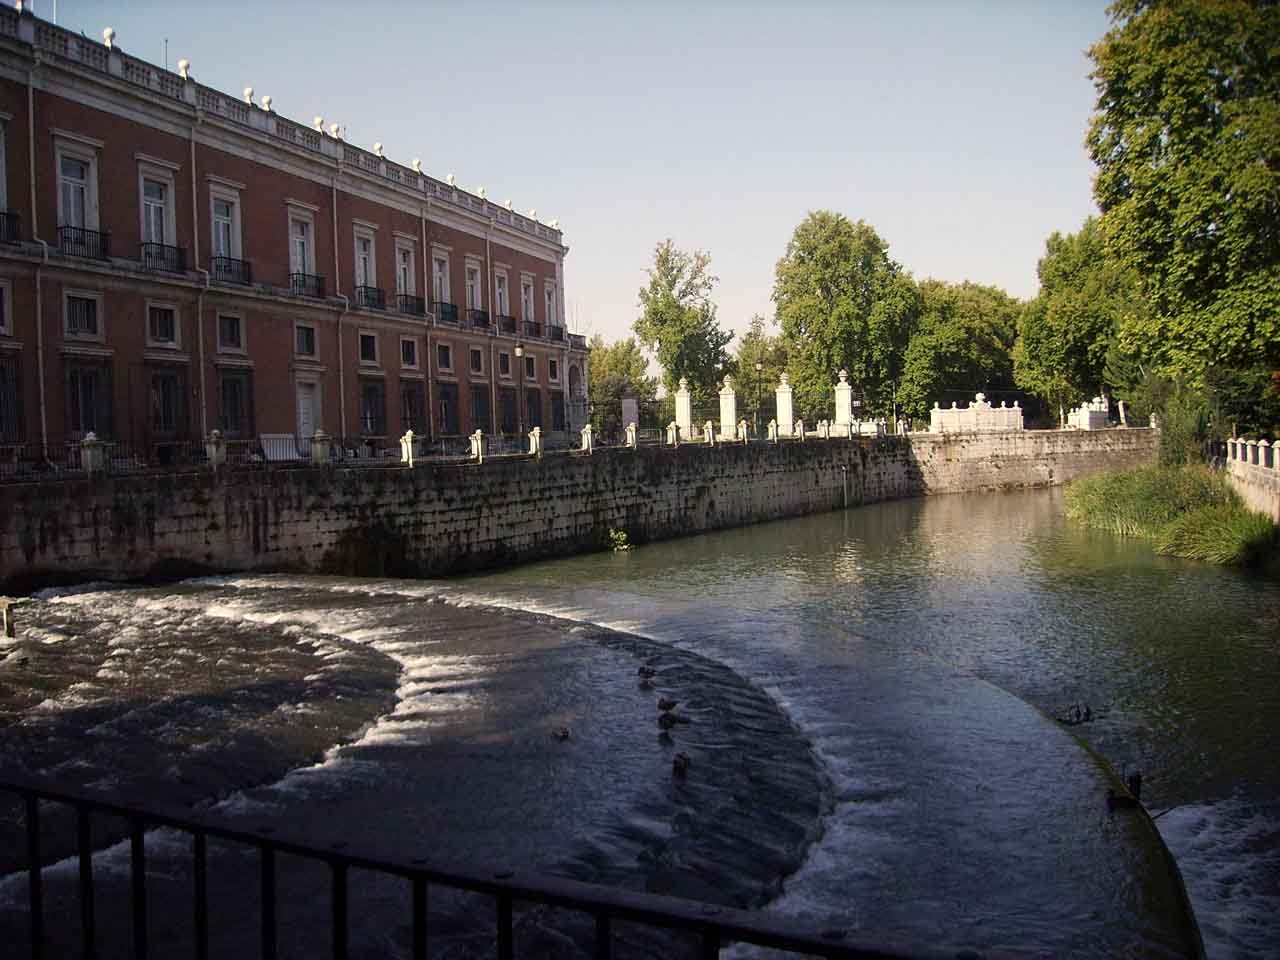 vista del palacio desde el jardin - Fuentes de Aranjuez